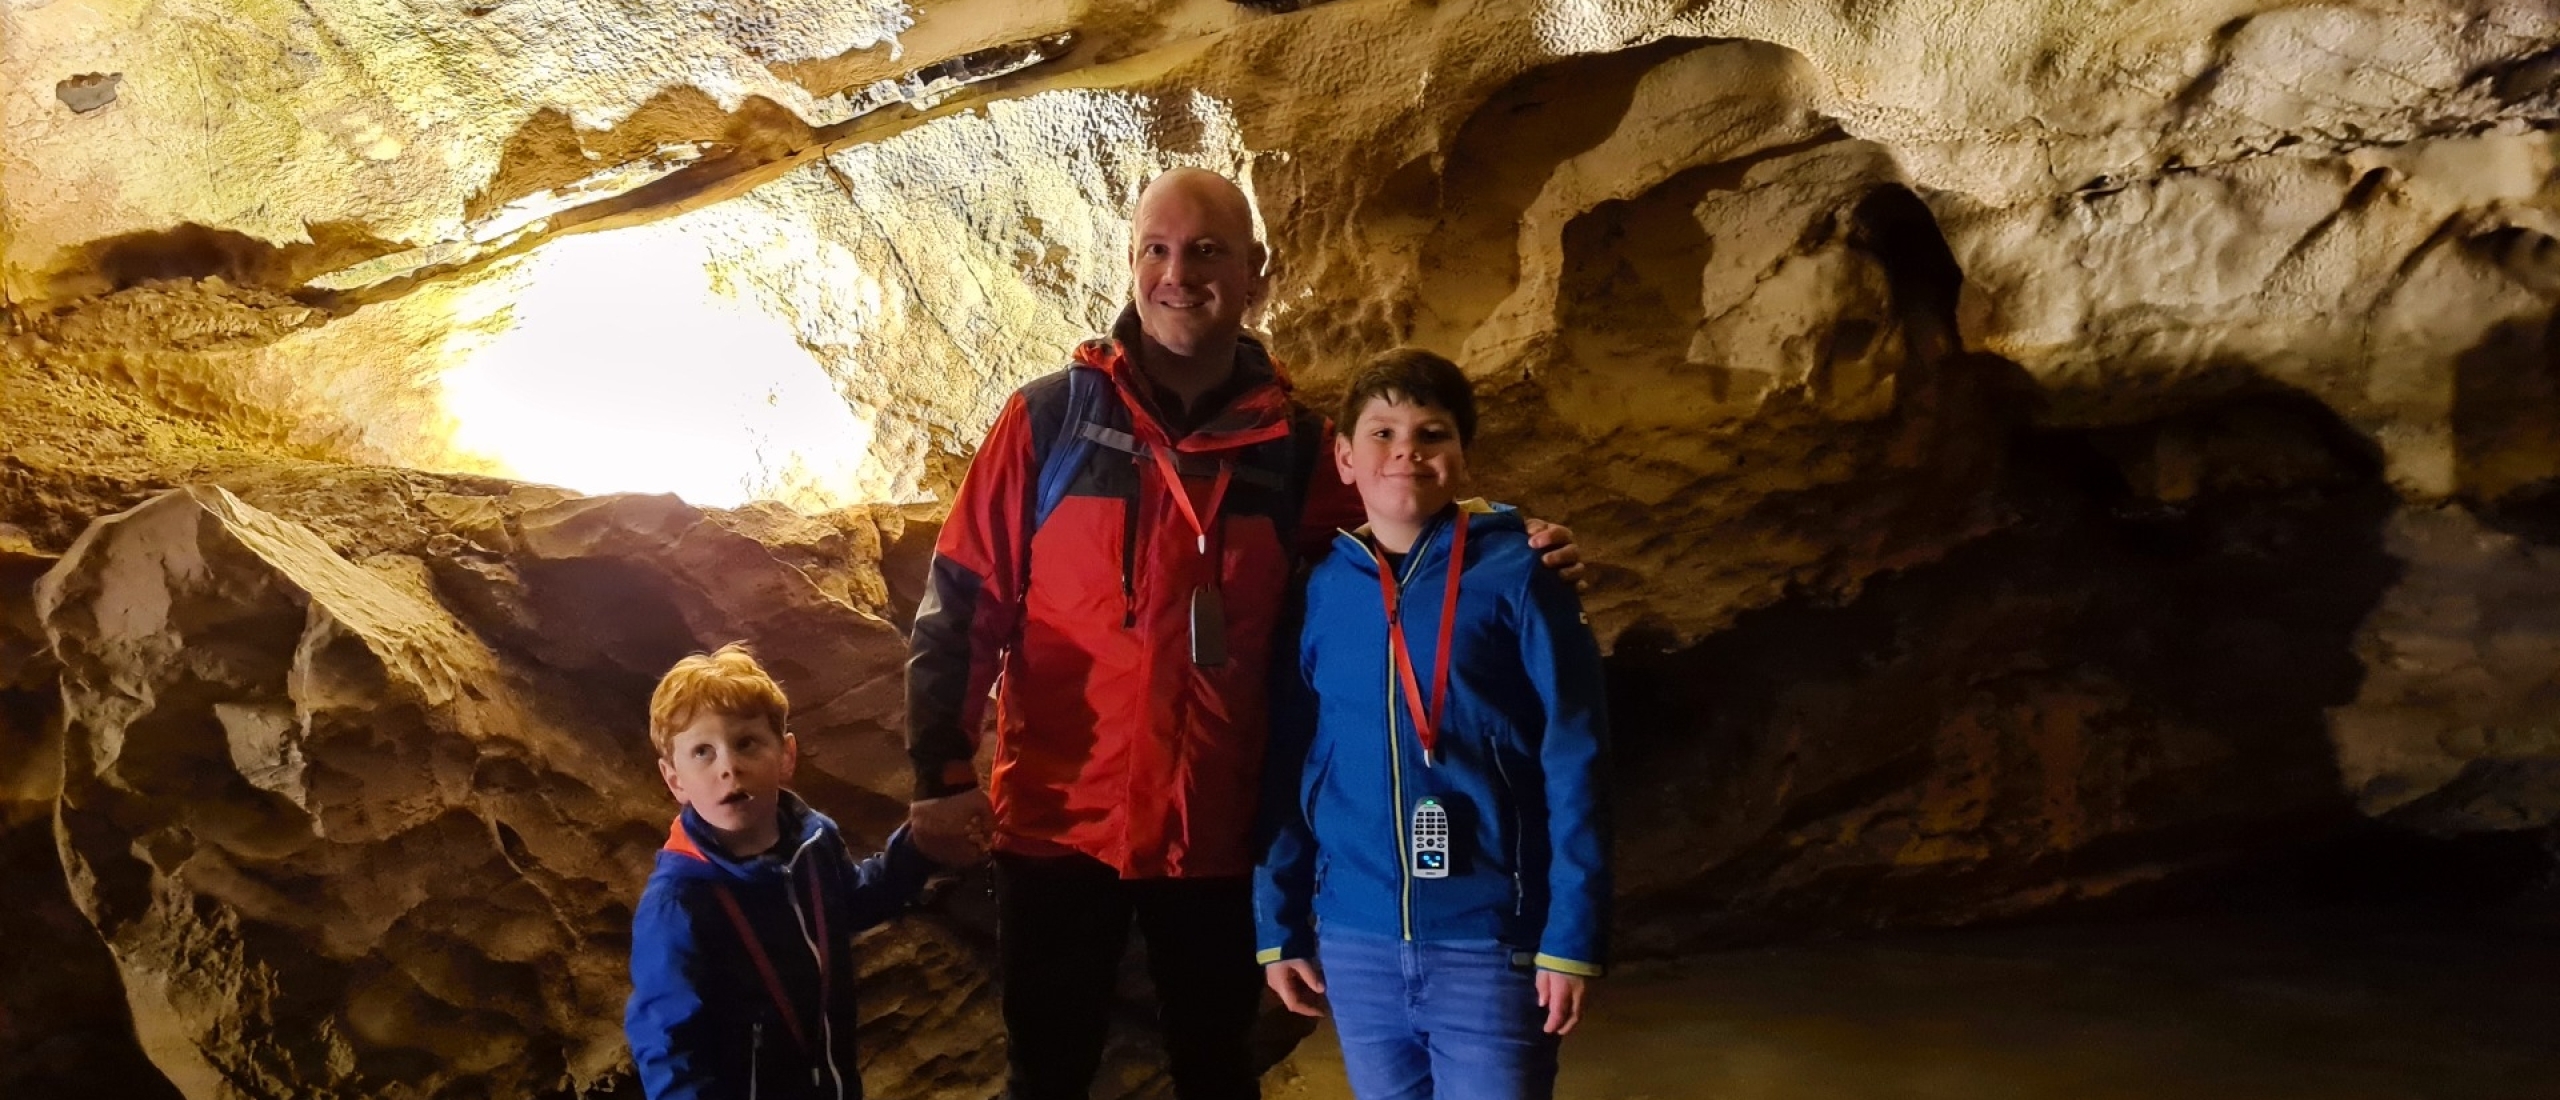 Grotten van Postojna, leren over de grotten en karst